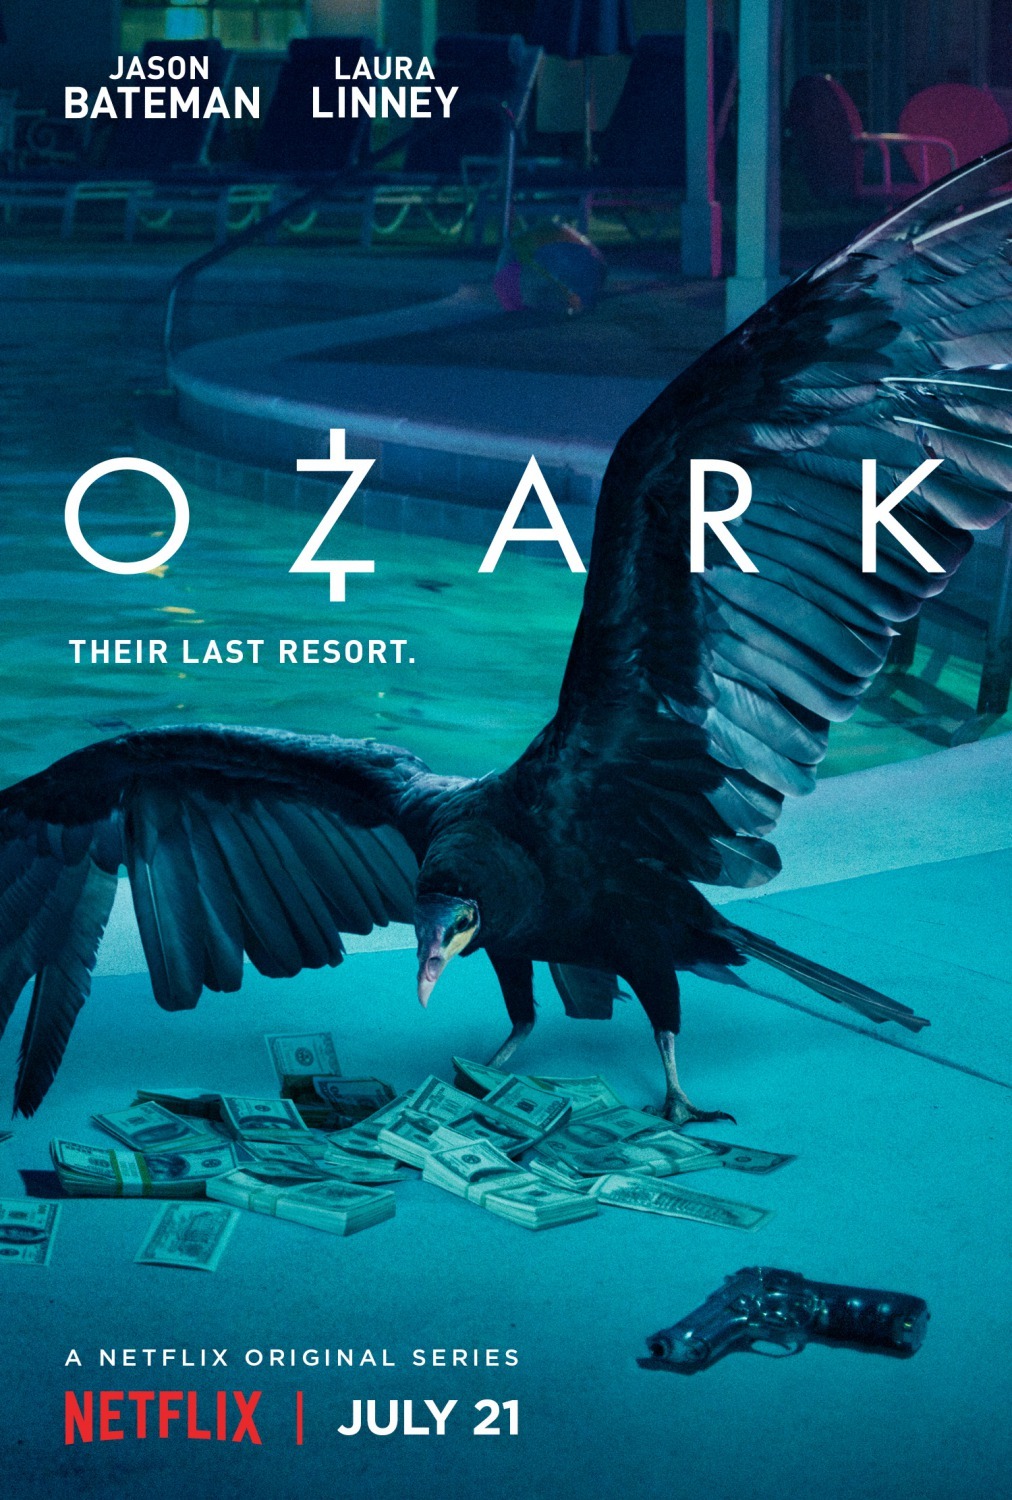 ดูหนังออนไลน์ฟรี Ozark Season 1 EP.9 โอซาร์ก ซีซั่น 1 ตอนที่ 9 (ซับไทย)